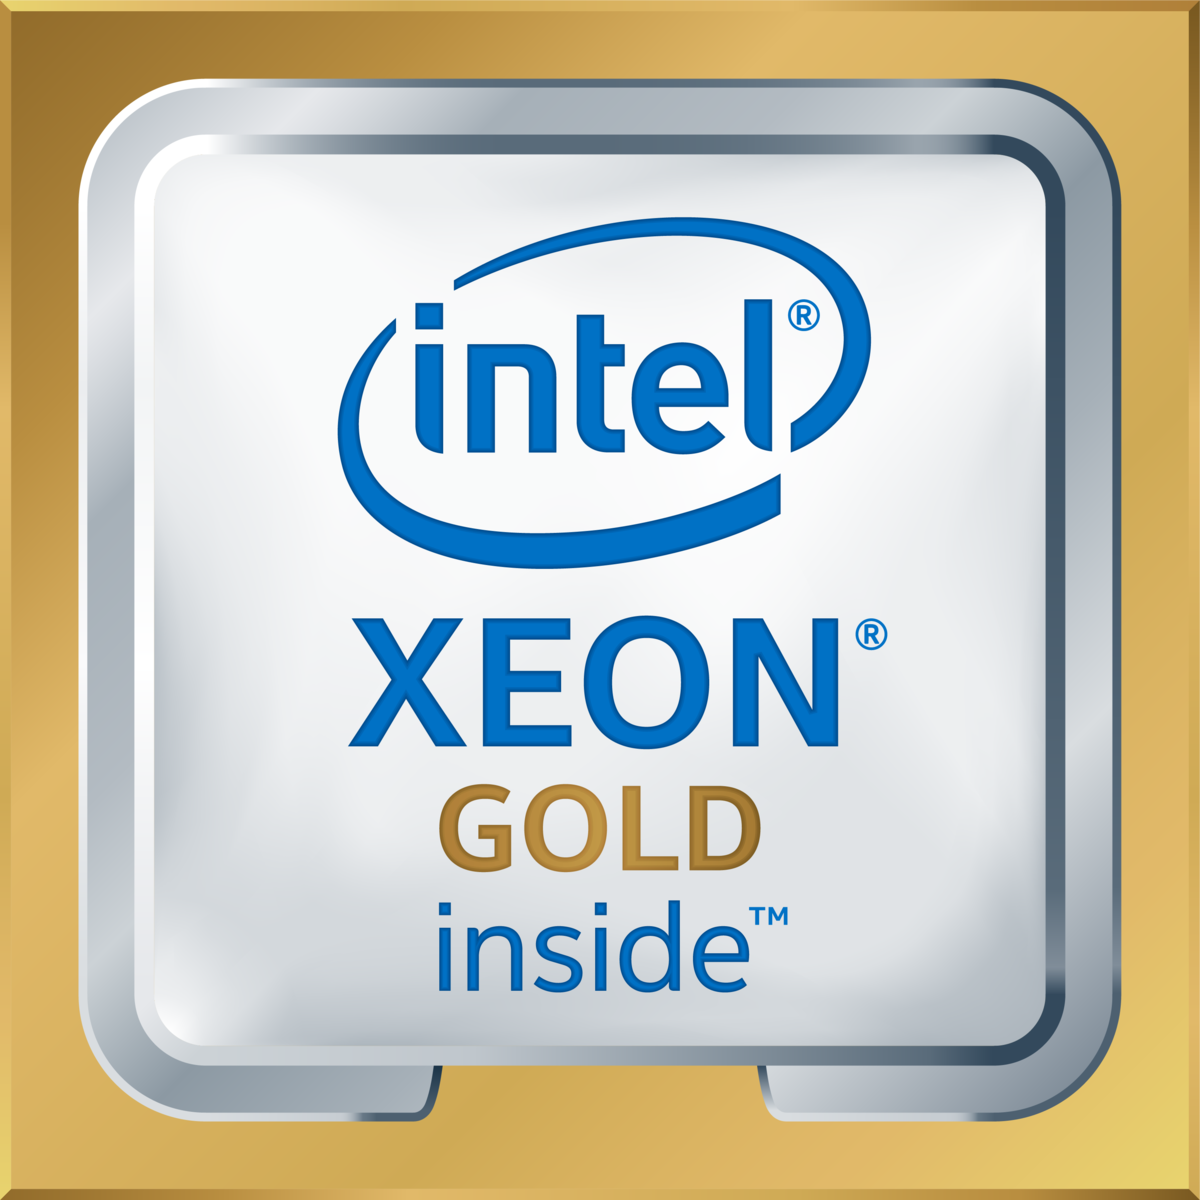 Intel(R) Xeon(R) Gold 6248R CPU @ 3.00GHz's logo